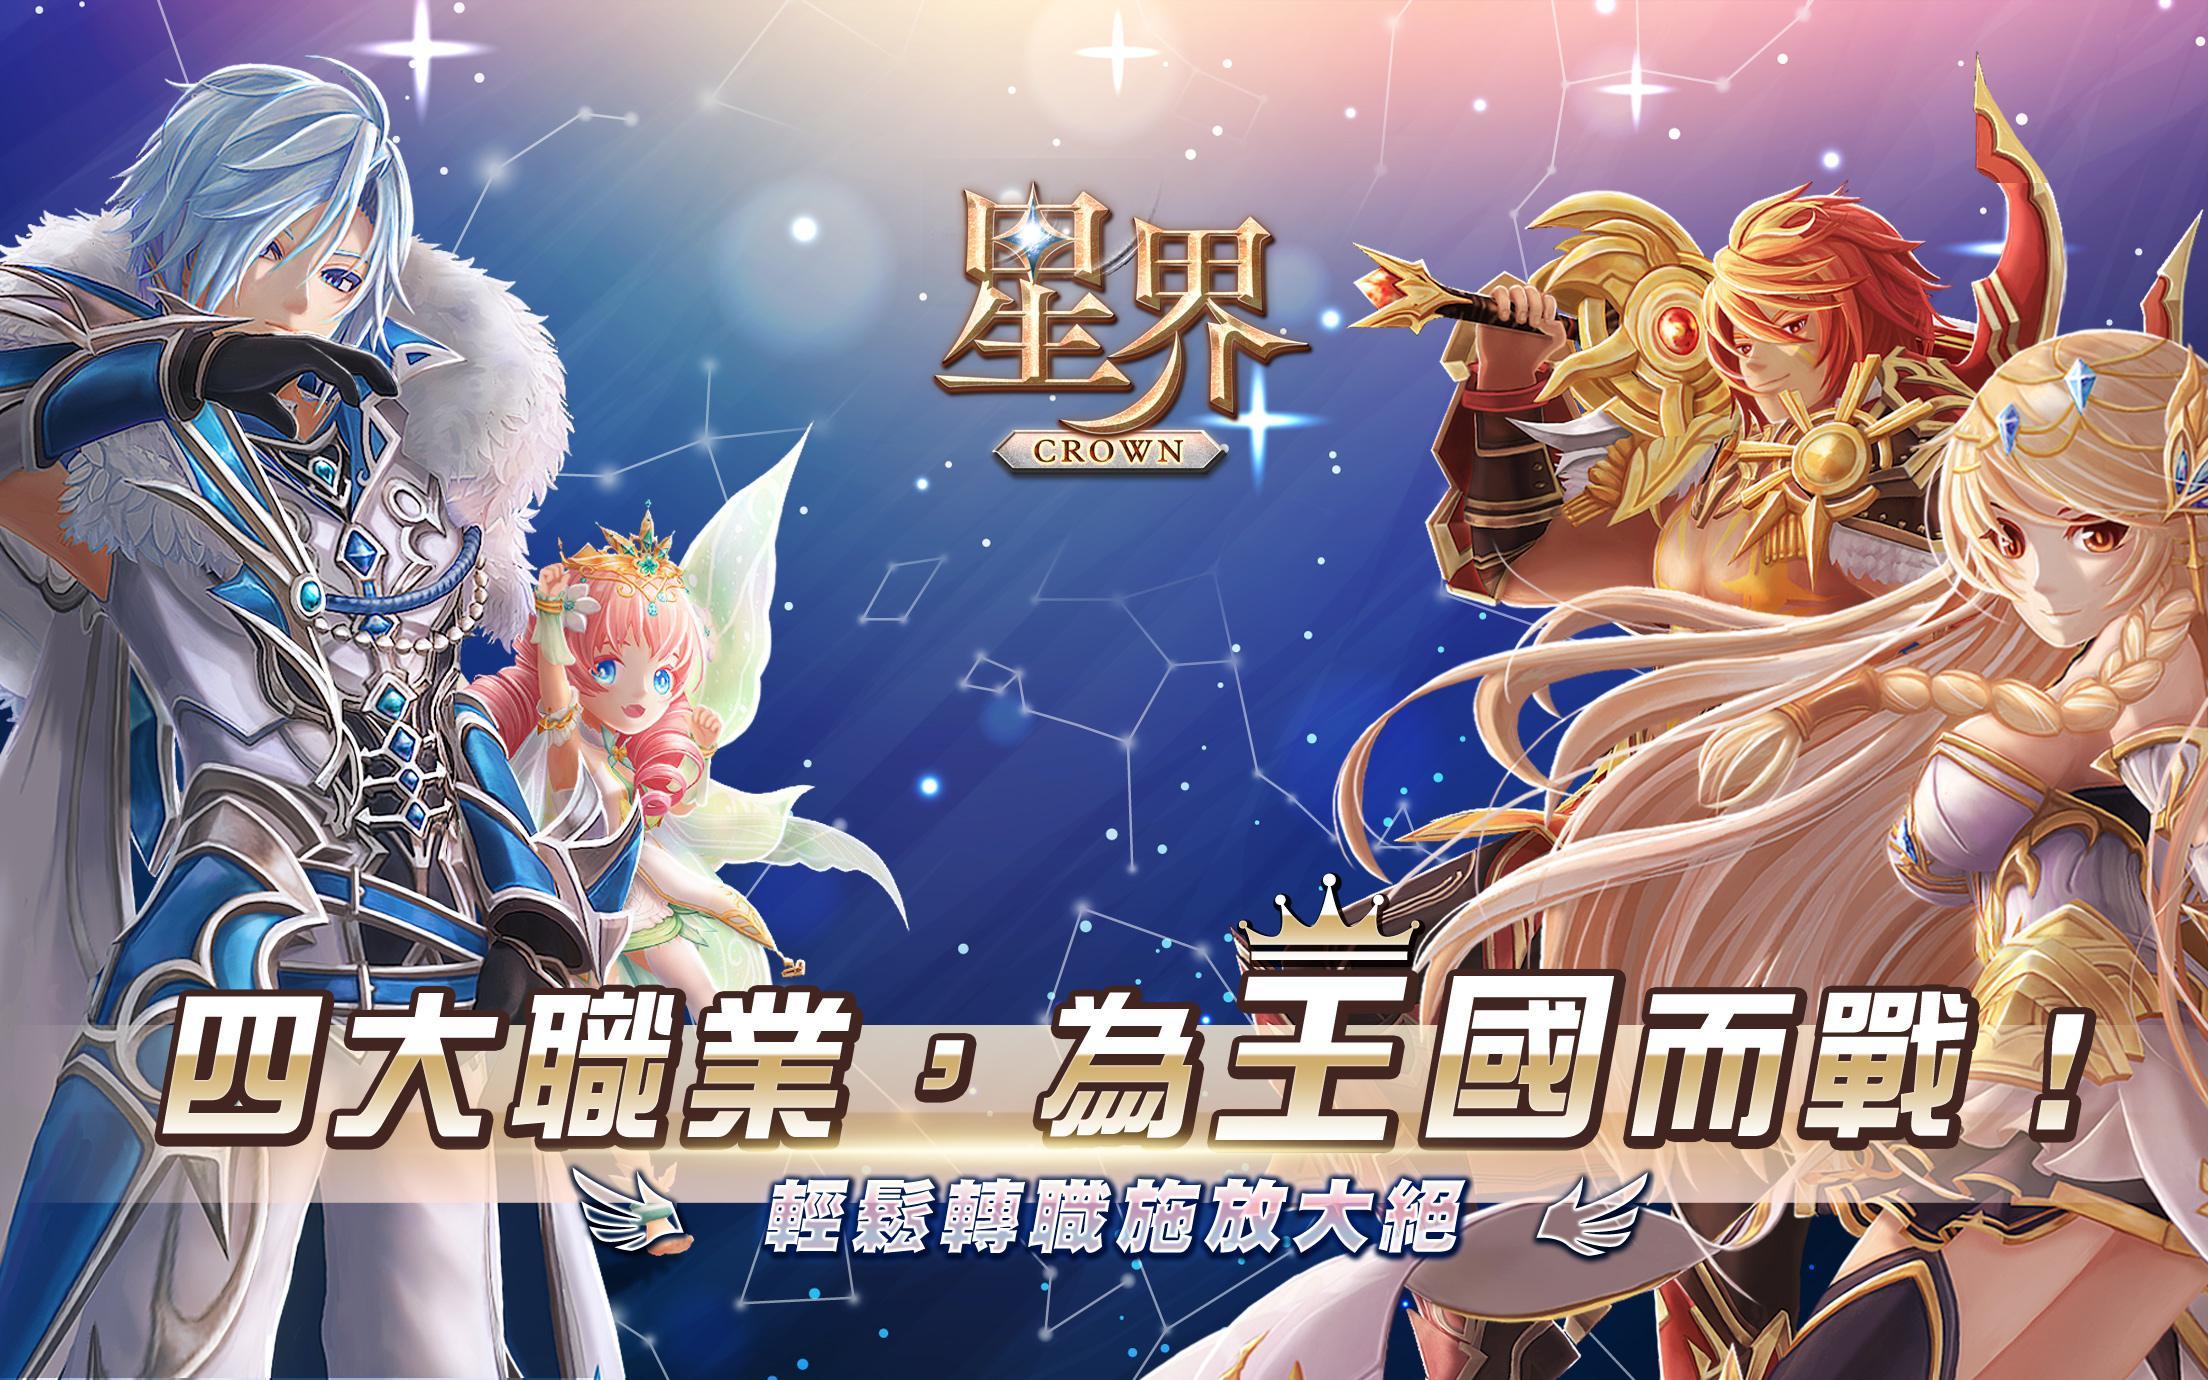 Banner of Astral: The Crown (Phiên bản Hồng Kông và Ma Cao) 11.0.1